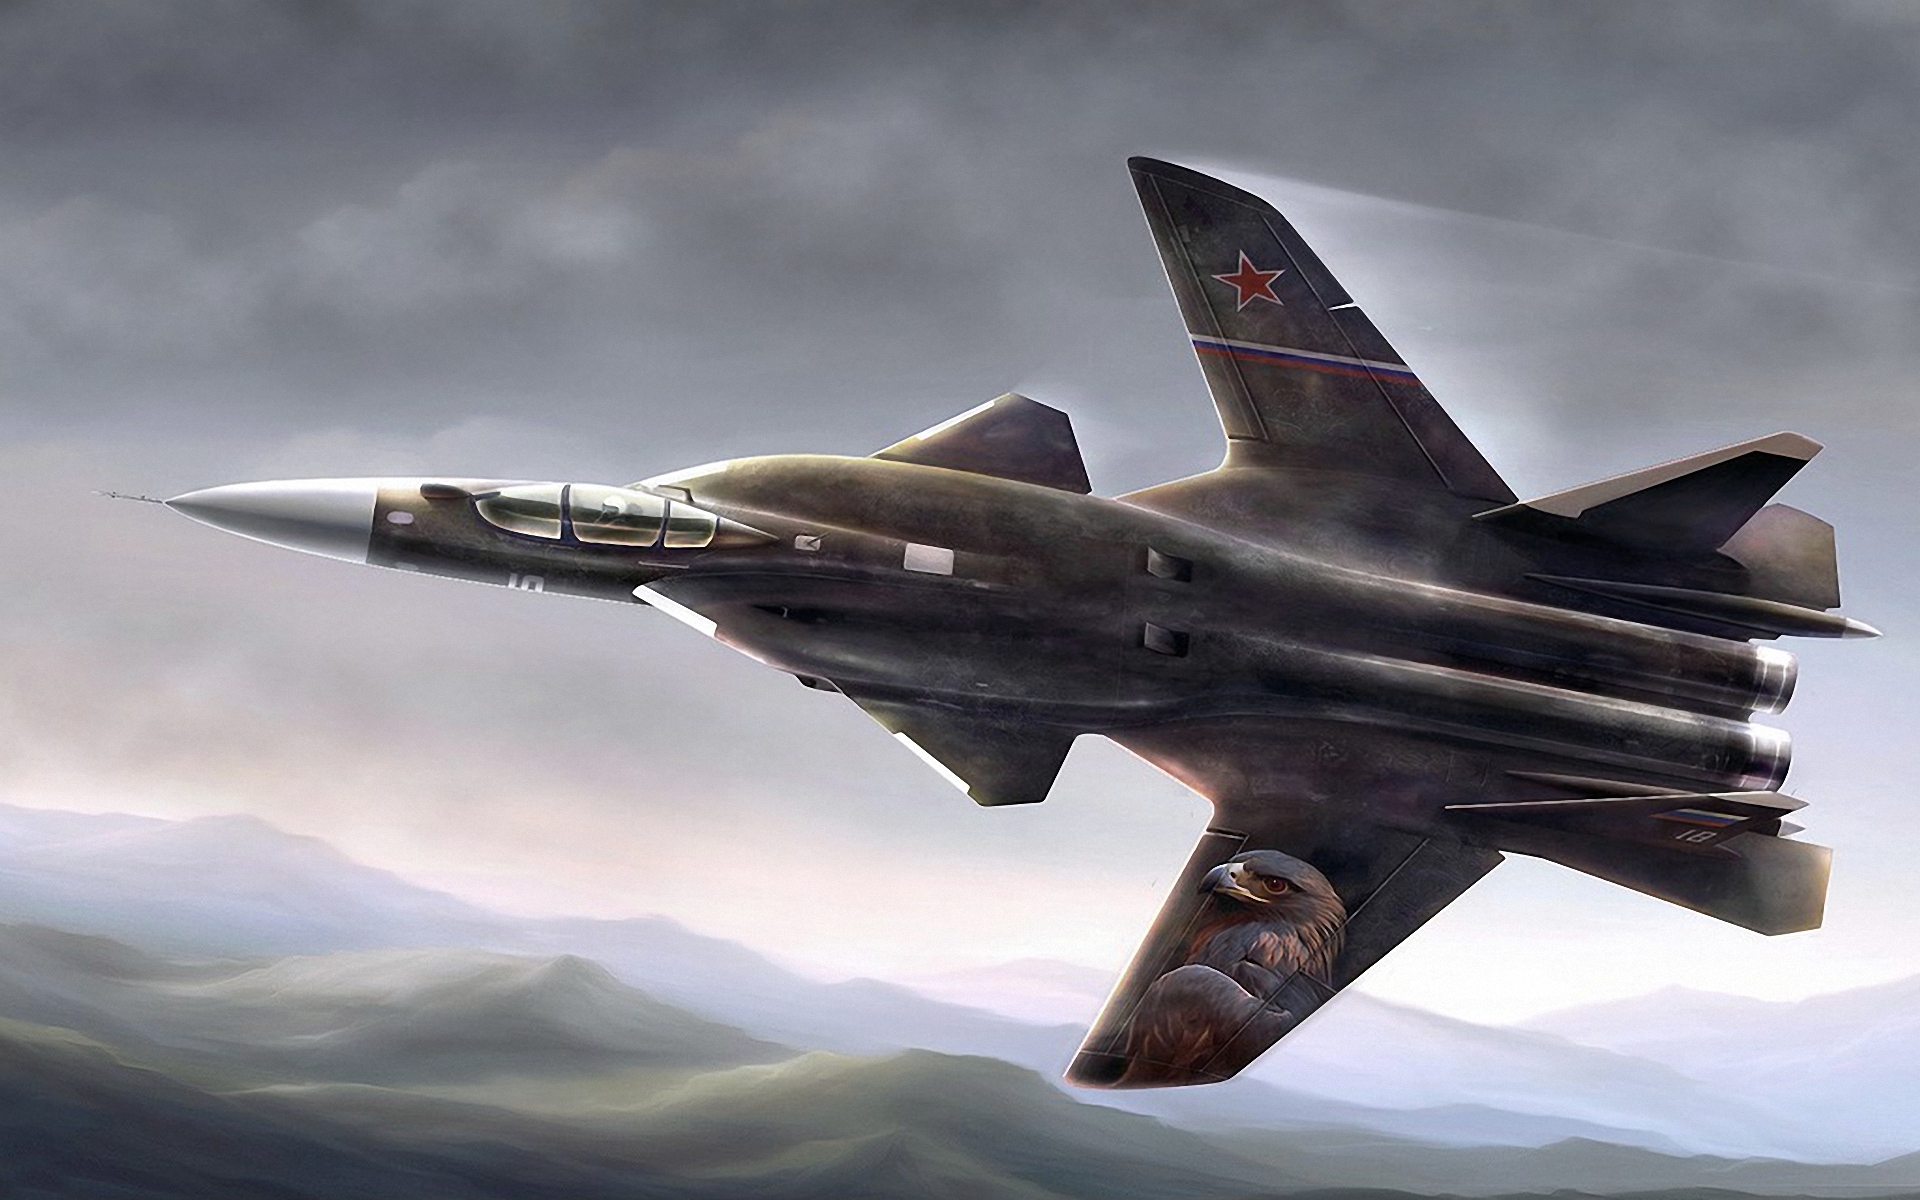 Su-47 "Berkut": dealbh